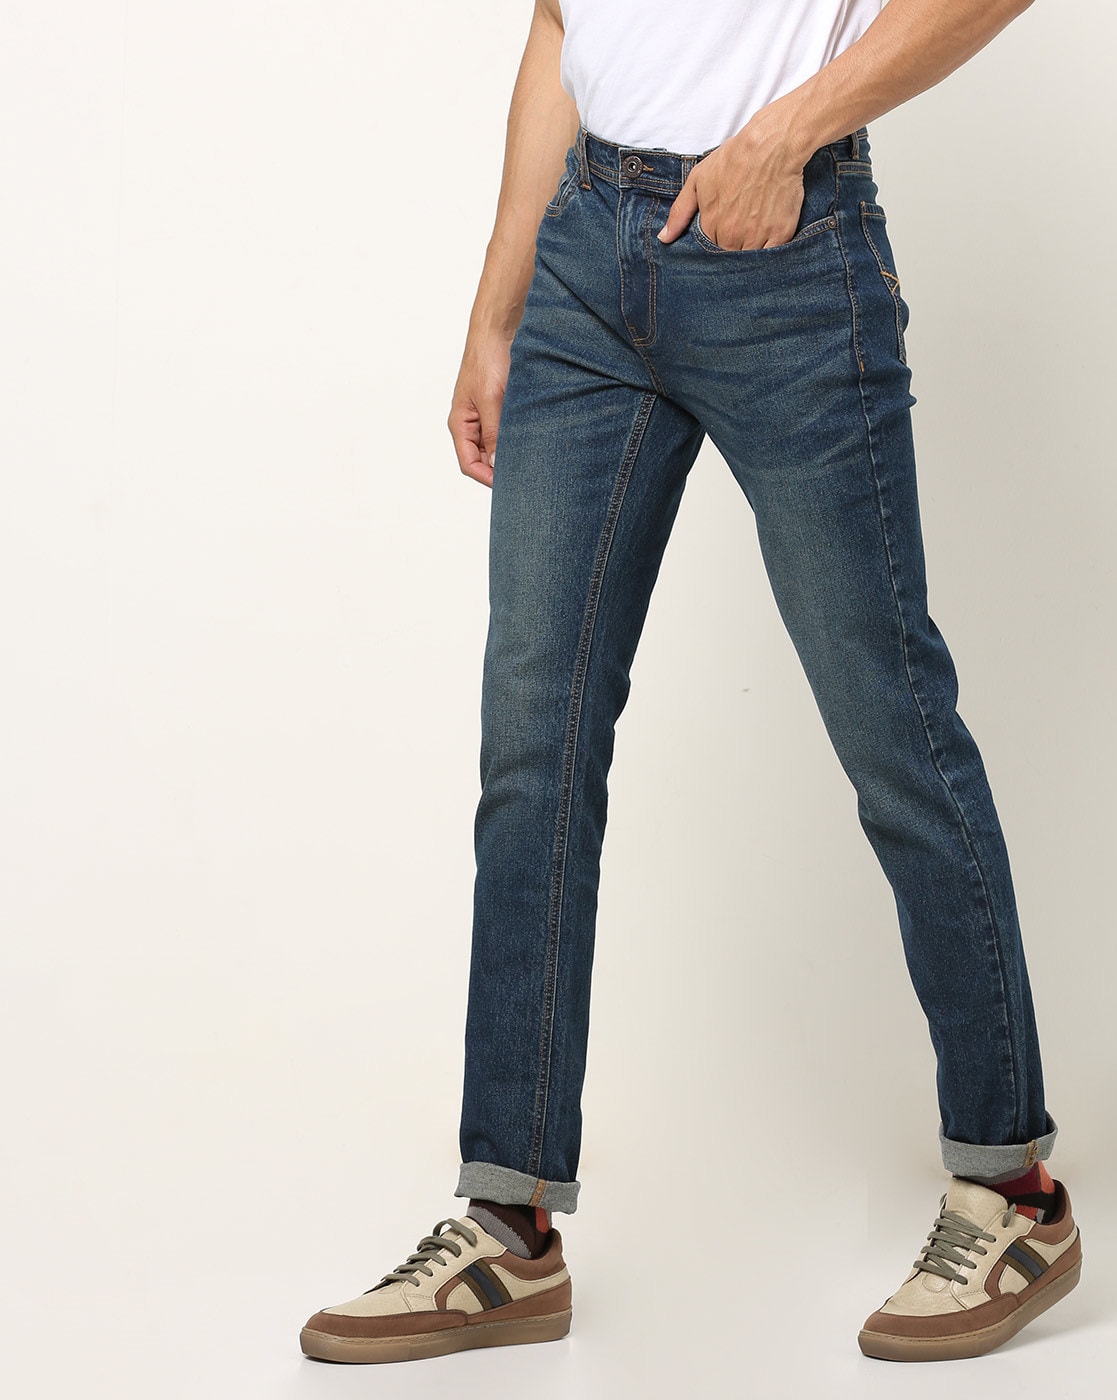 dnmx jeans price